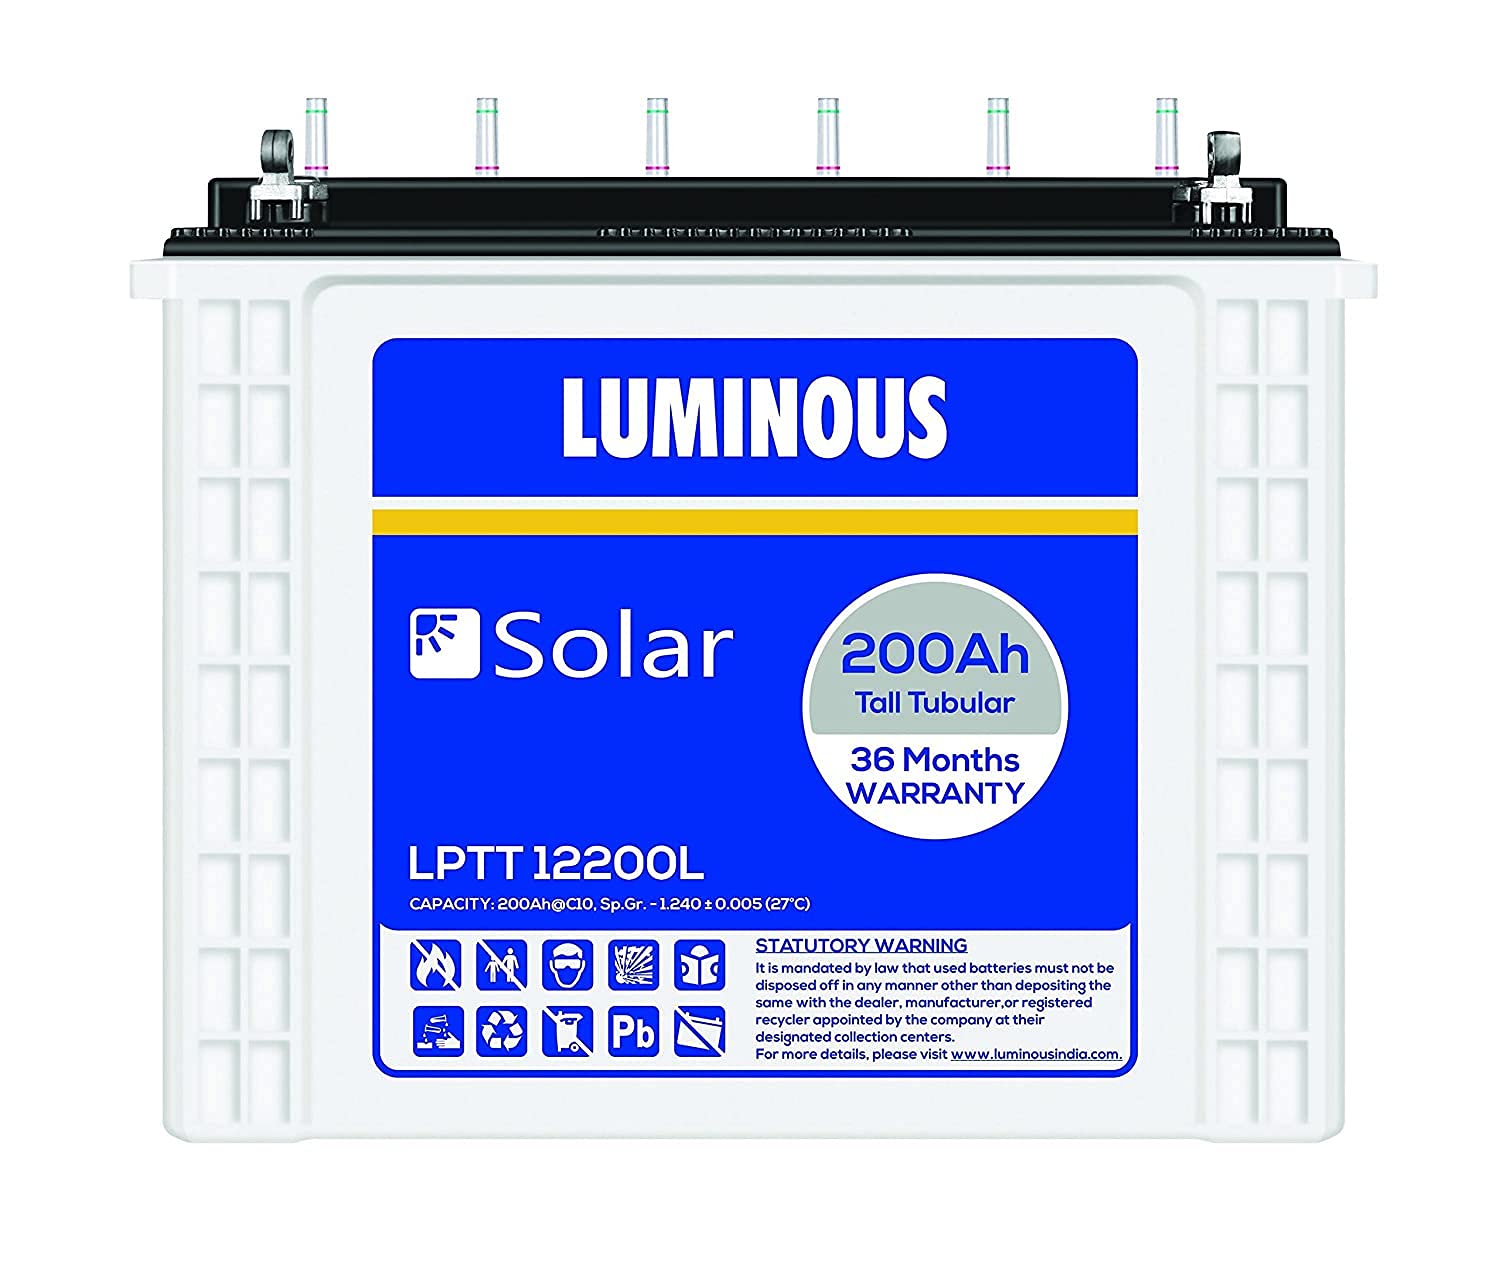 Luminous Solar LPTT12200L 200 Ah Tall Tubular Inverter Battery for Home, Office Shop